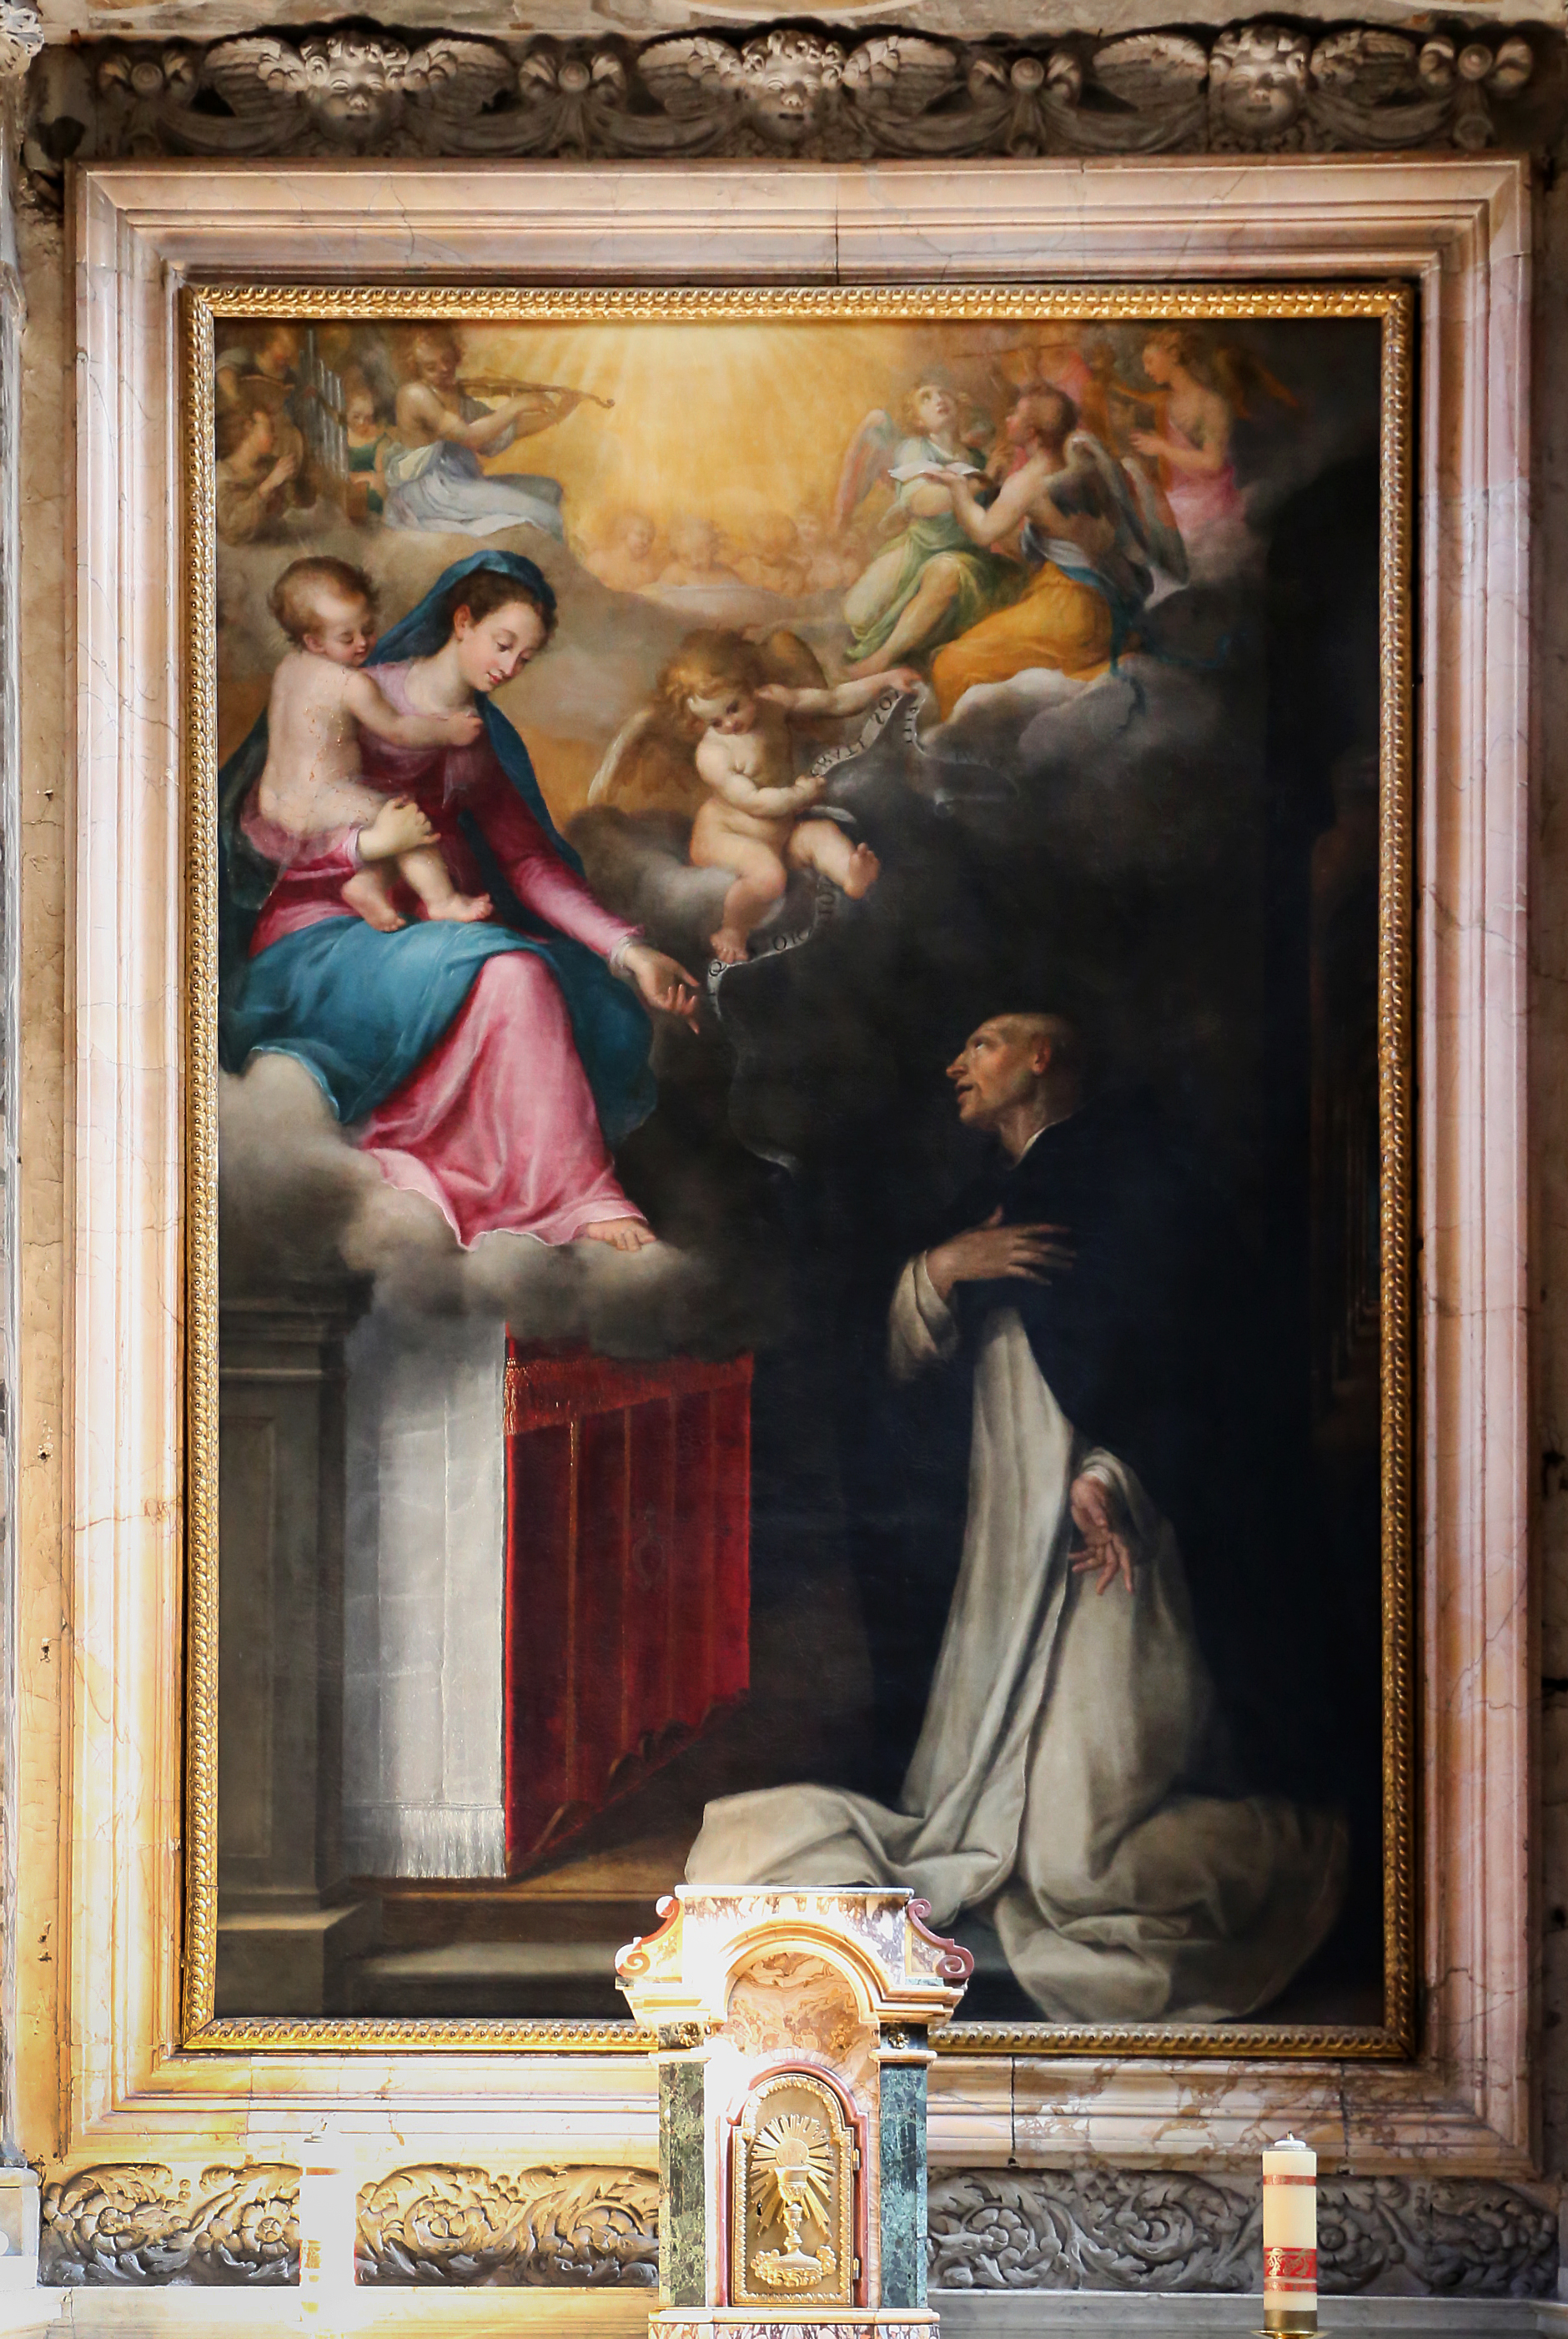 Lavinia fontana, la Vergine appare a San Giacinto, 1600. Dipinto di Federico Zuccari.  Santa Sabina (Roma) - Cappella di San Giacinto.